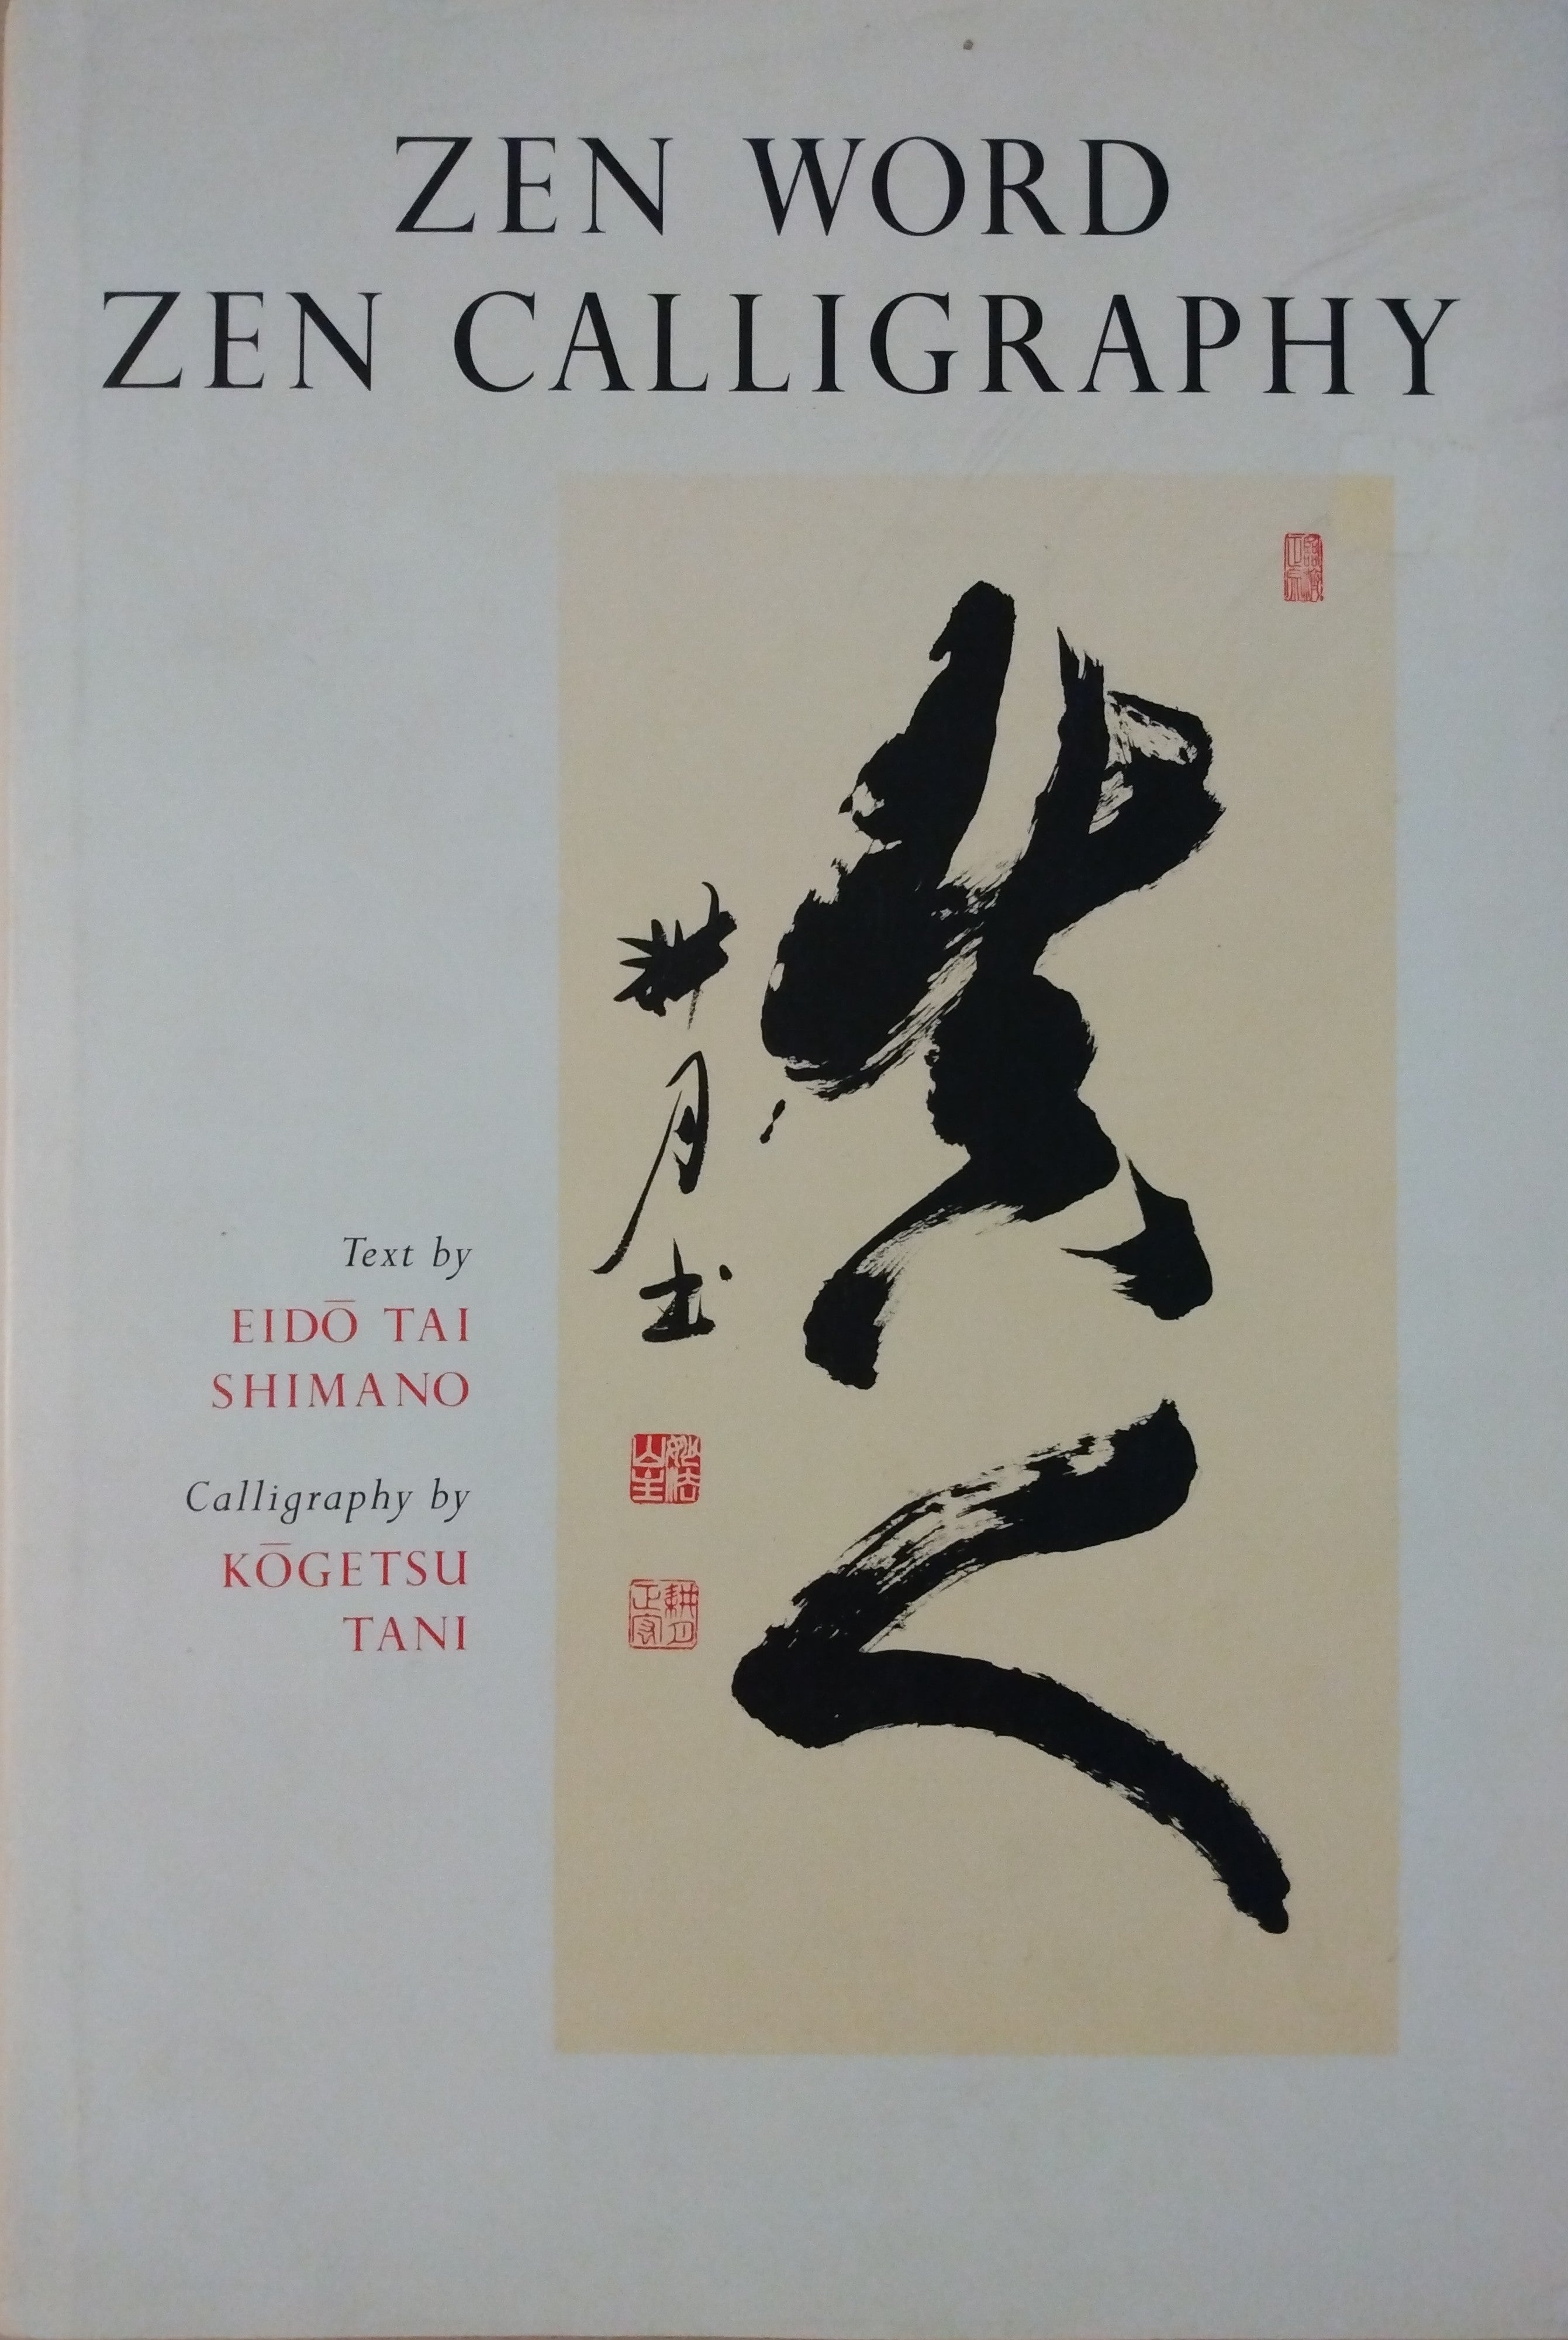 "Zen Word Zen Calligraphy", by Eidou Tai Shimano and Kougetsu Tani; Thiel Collection